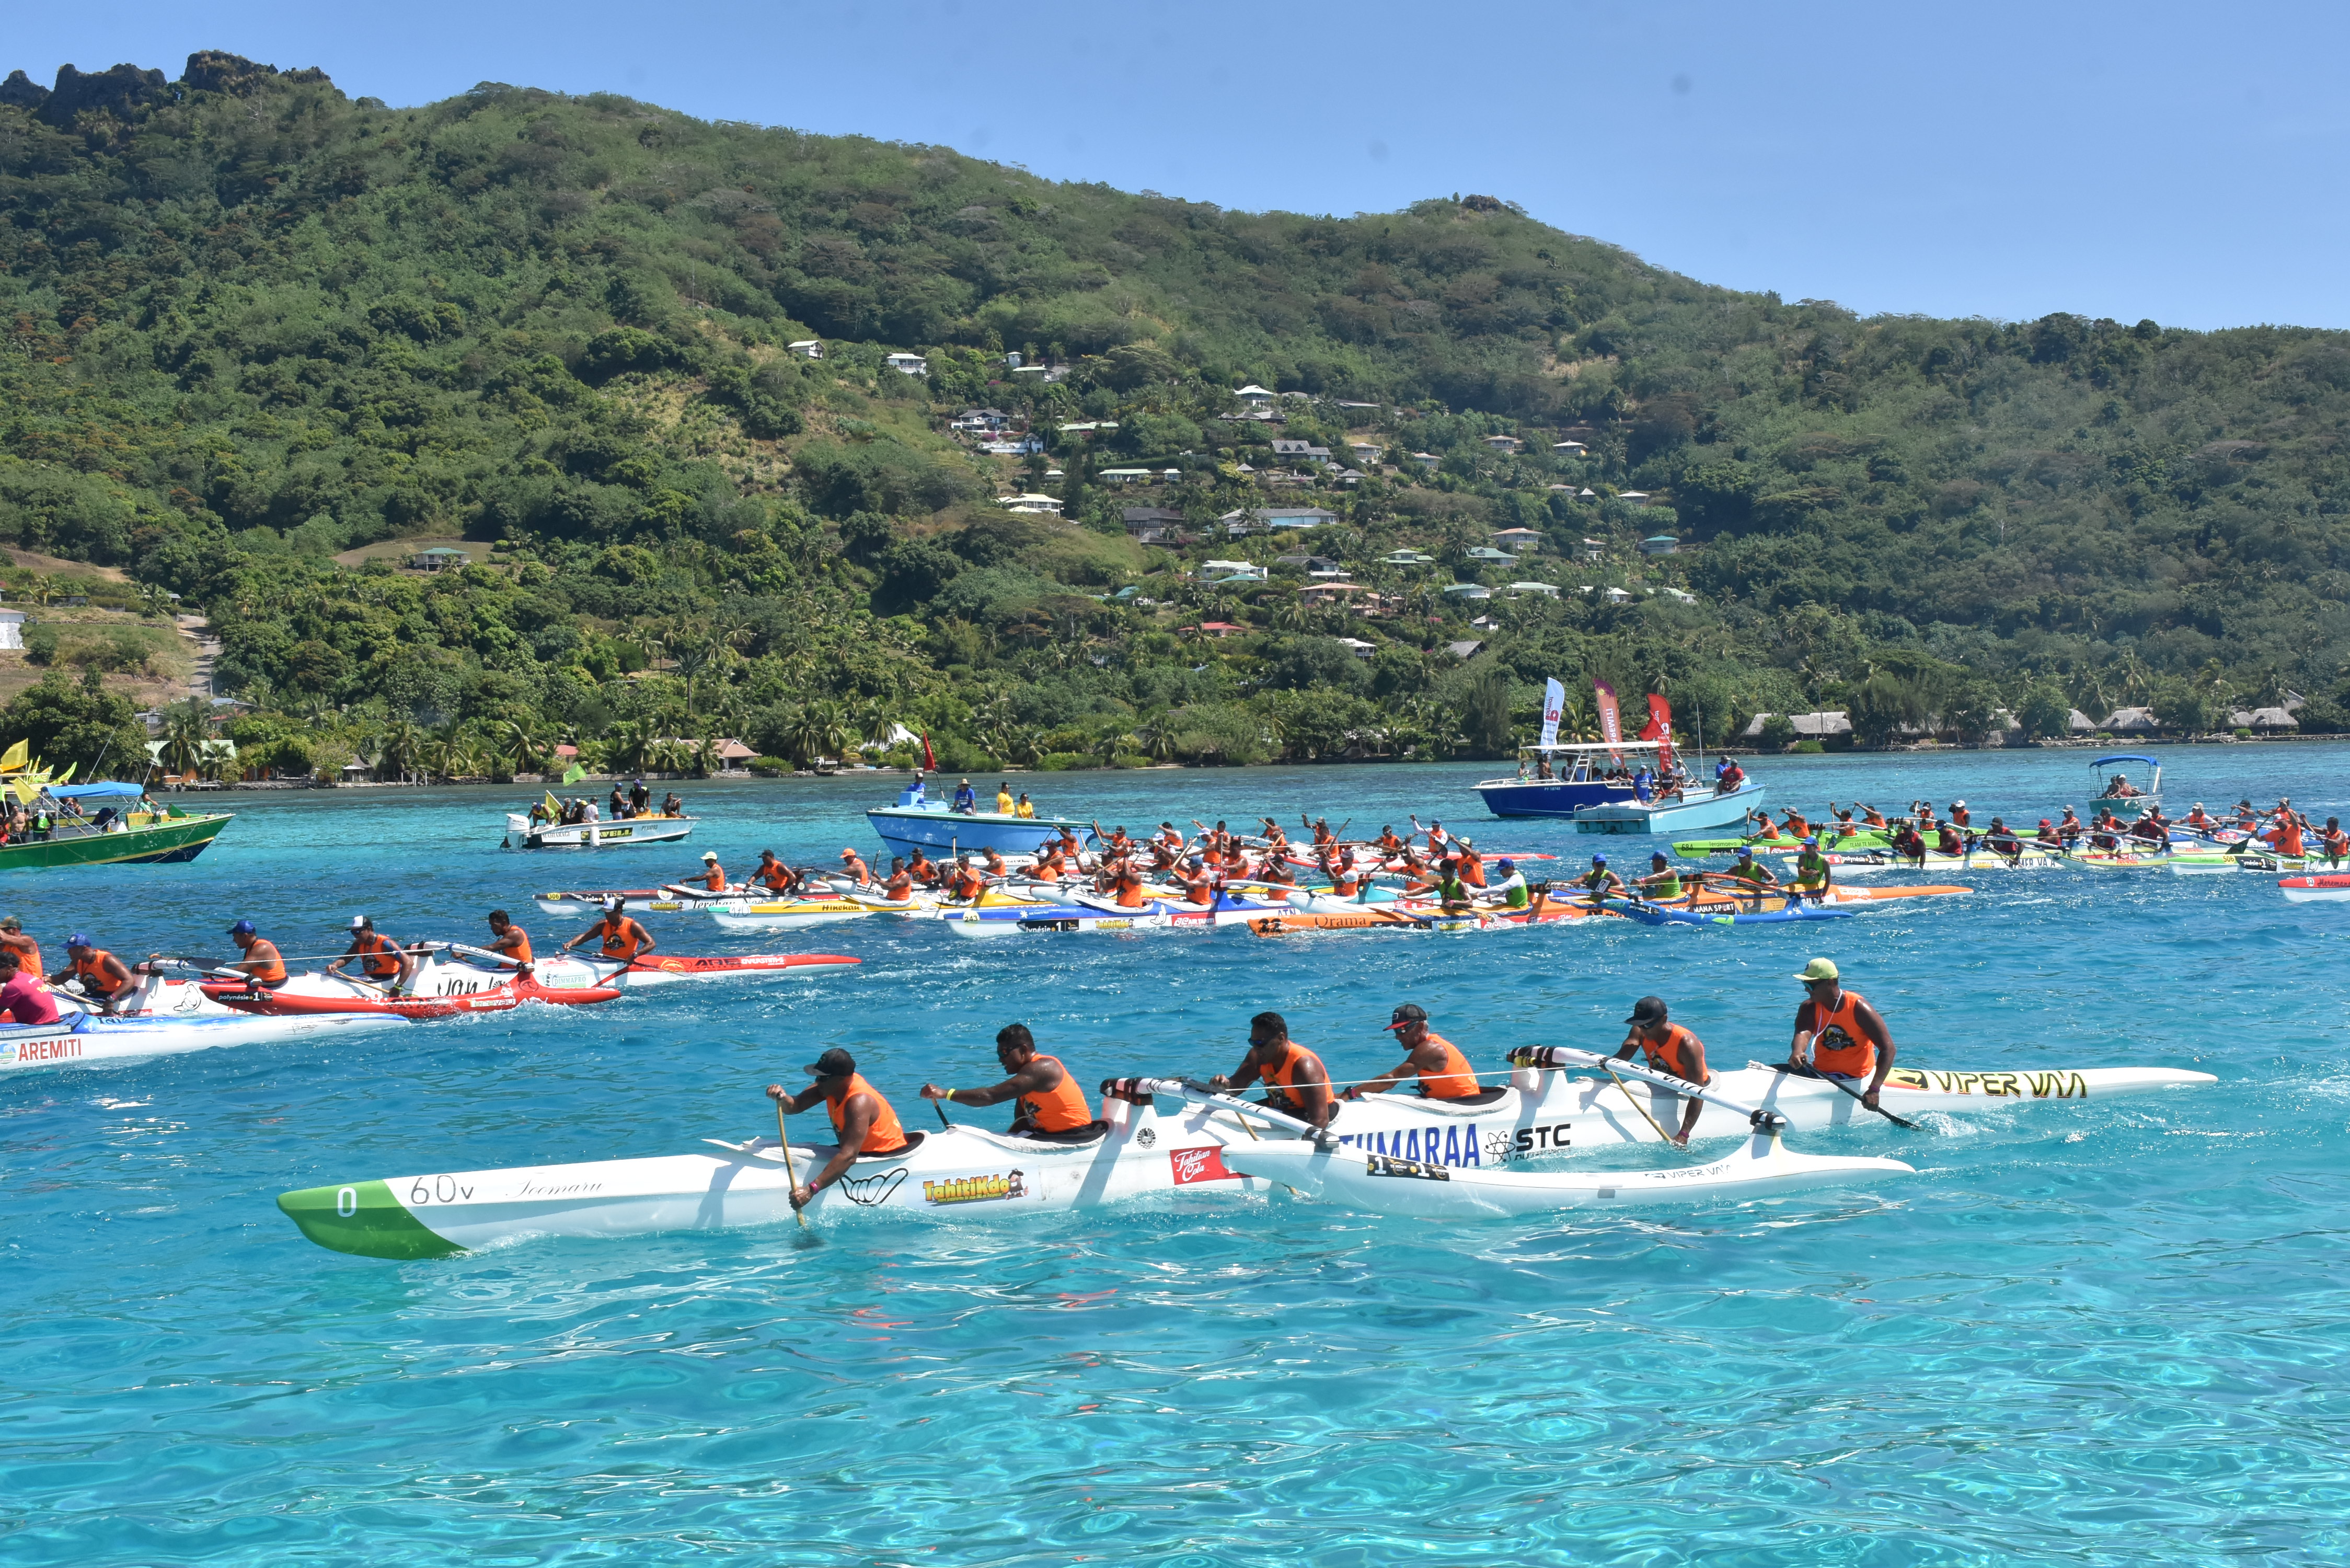 Shell Va'a une nouvelle fois intouchable au Marathon Polynésie la 1ère